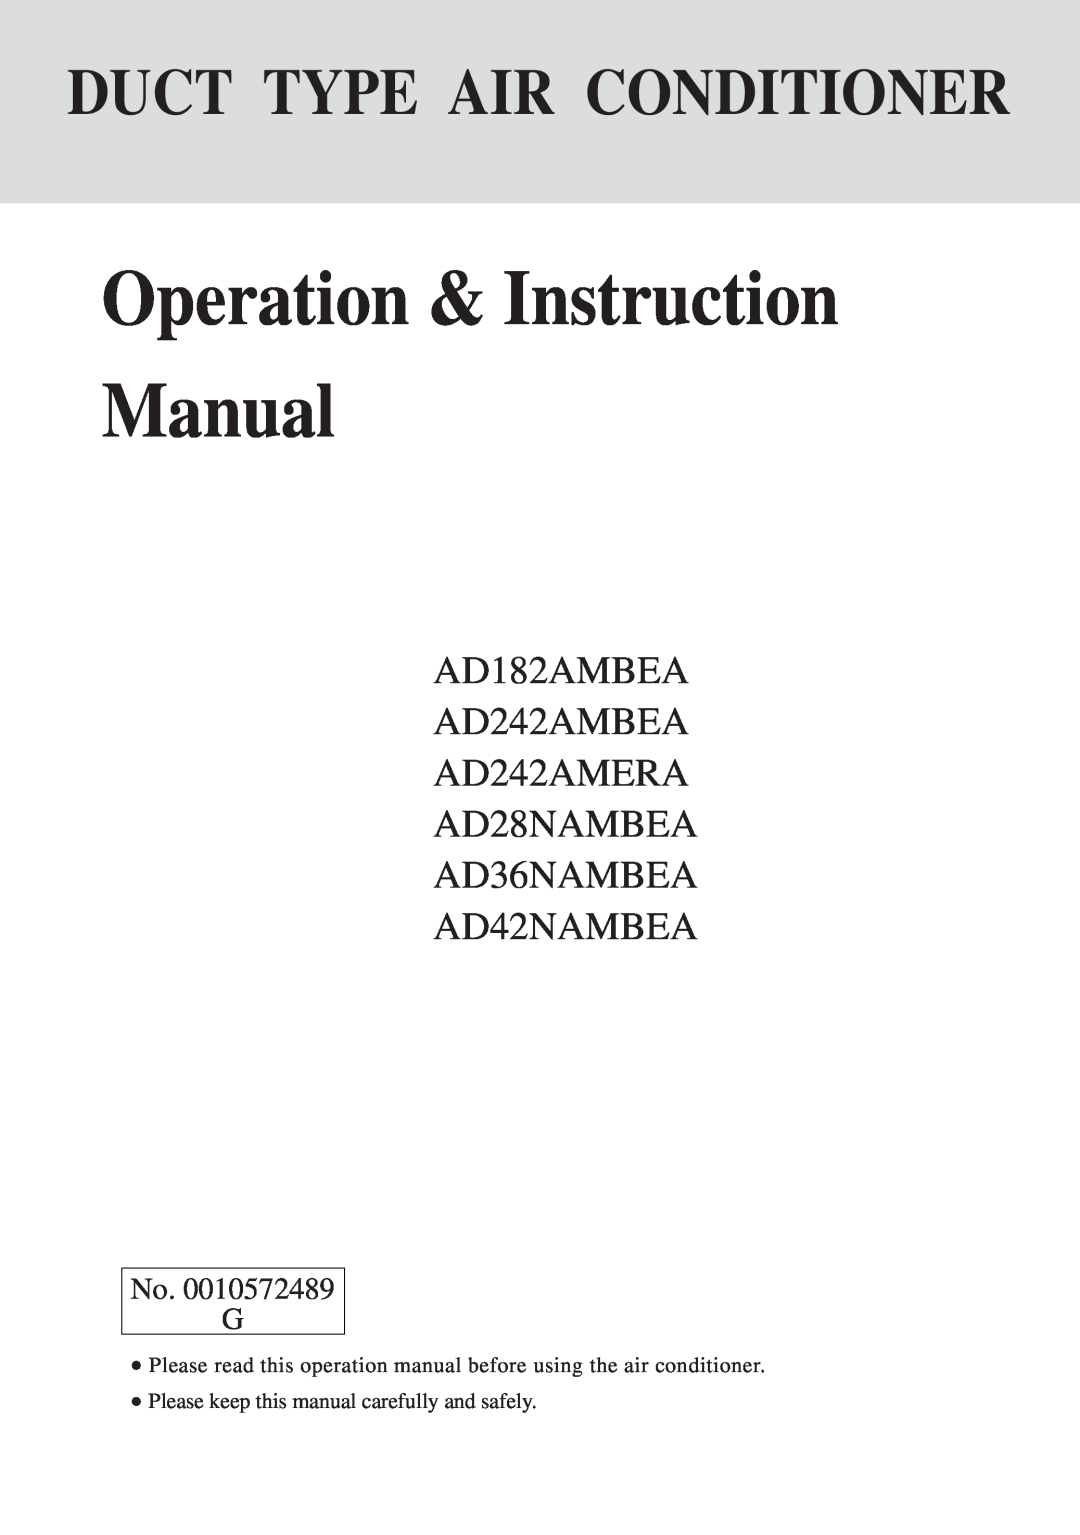 Haier AD36NAMBEA instruction manual No. G, Duct Type Air Conditioner, AD182AMBEA AD242AMBEA AD242AMERA AD28NAMBEA 